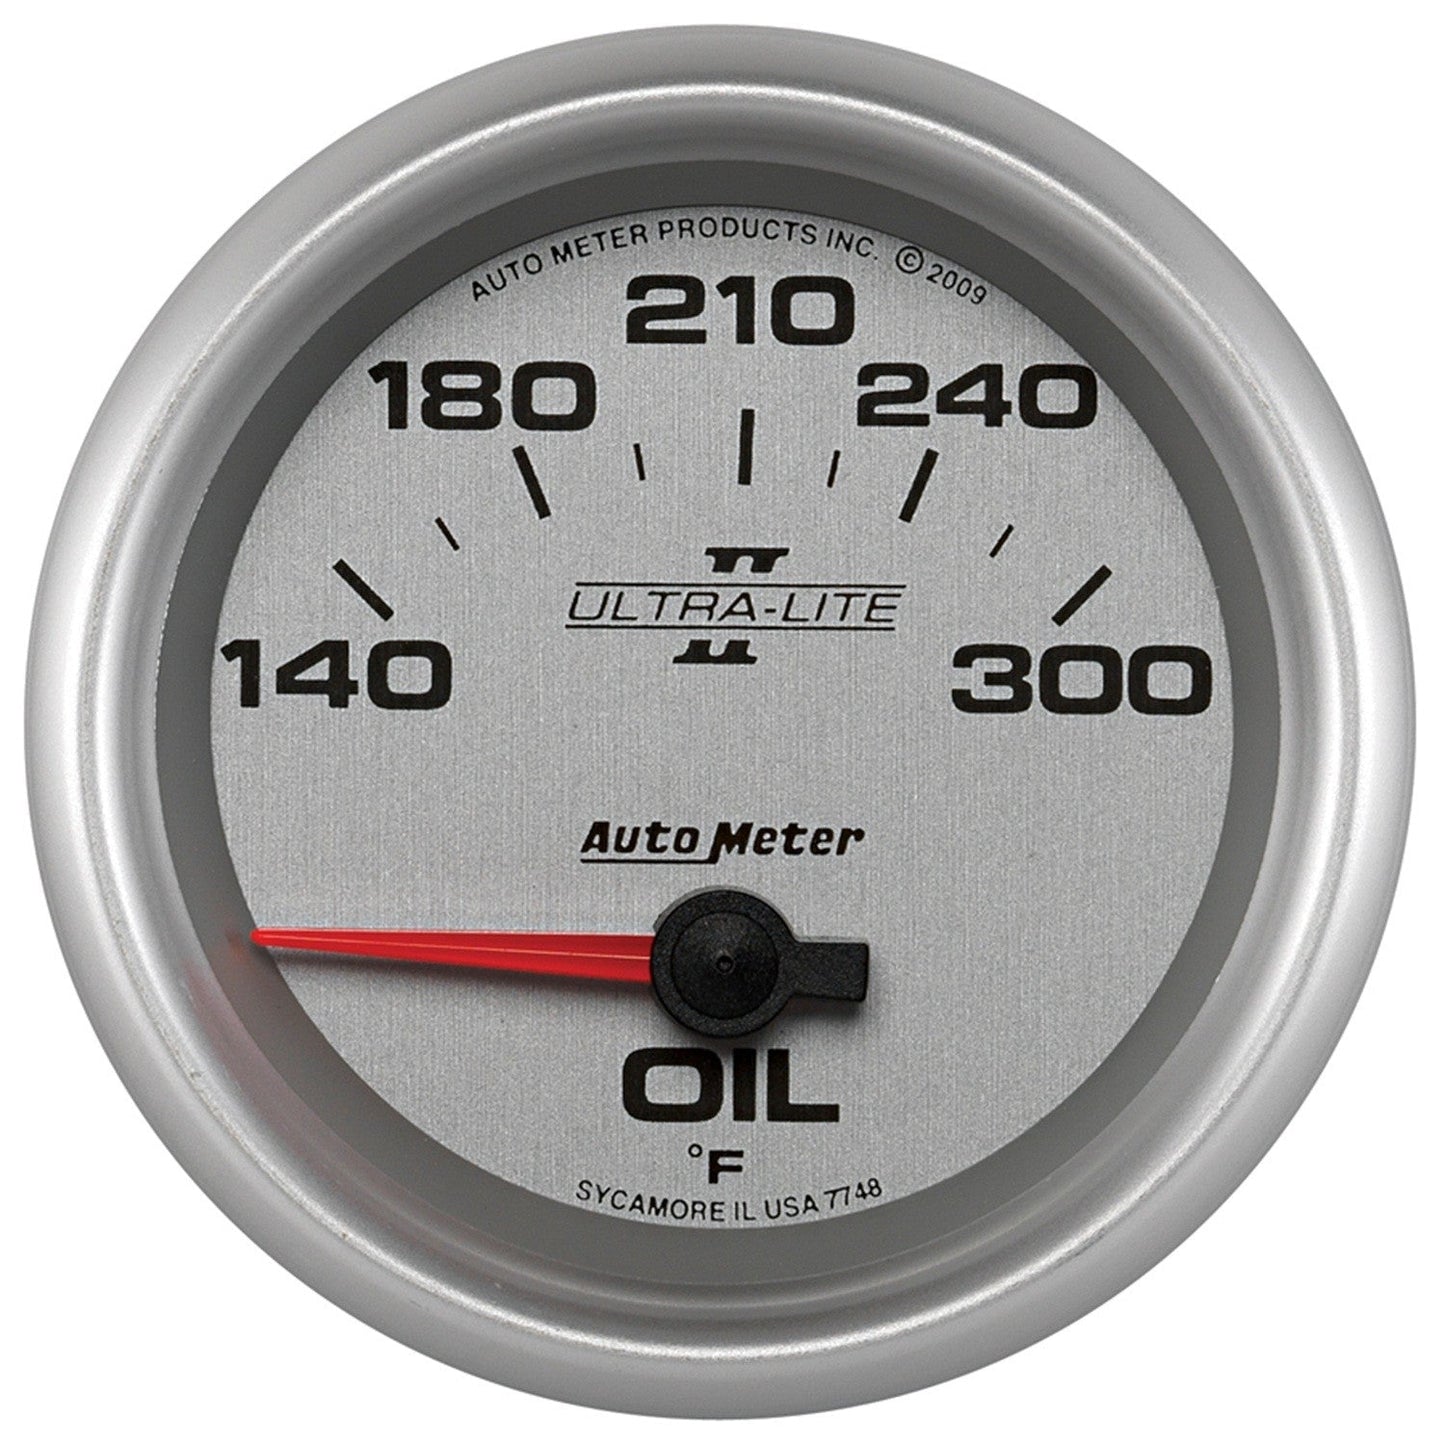 AutoMeter - 2-5/8" OIL TEMPERATURE, 140-300 °F, AIR-CORE, ULTRA-LITE II (7748)